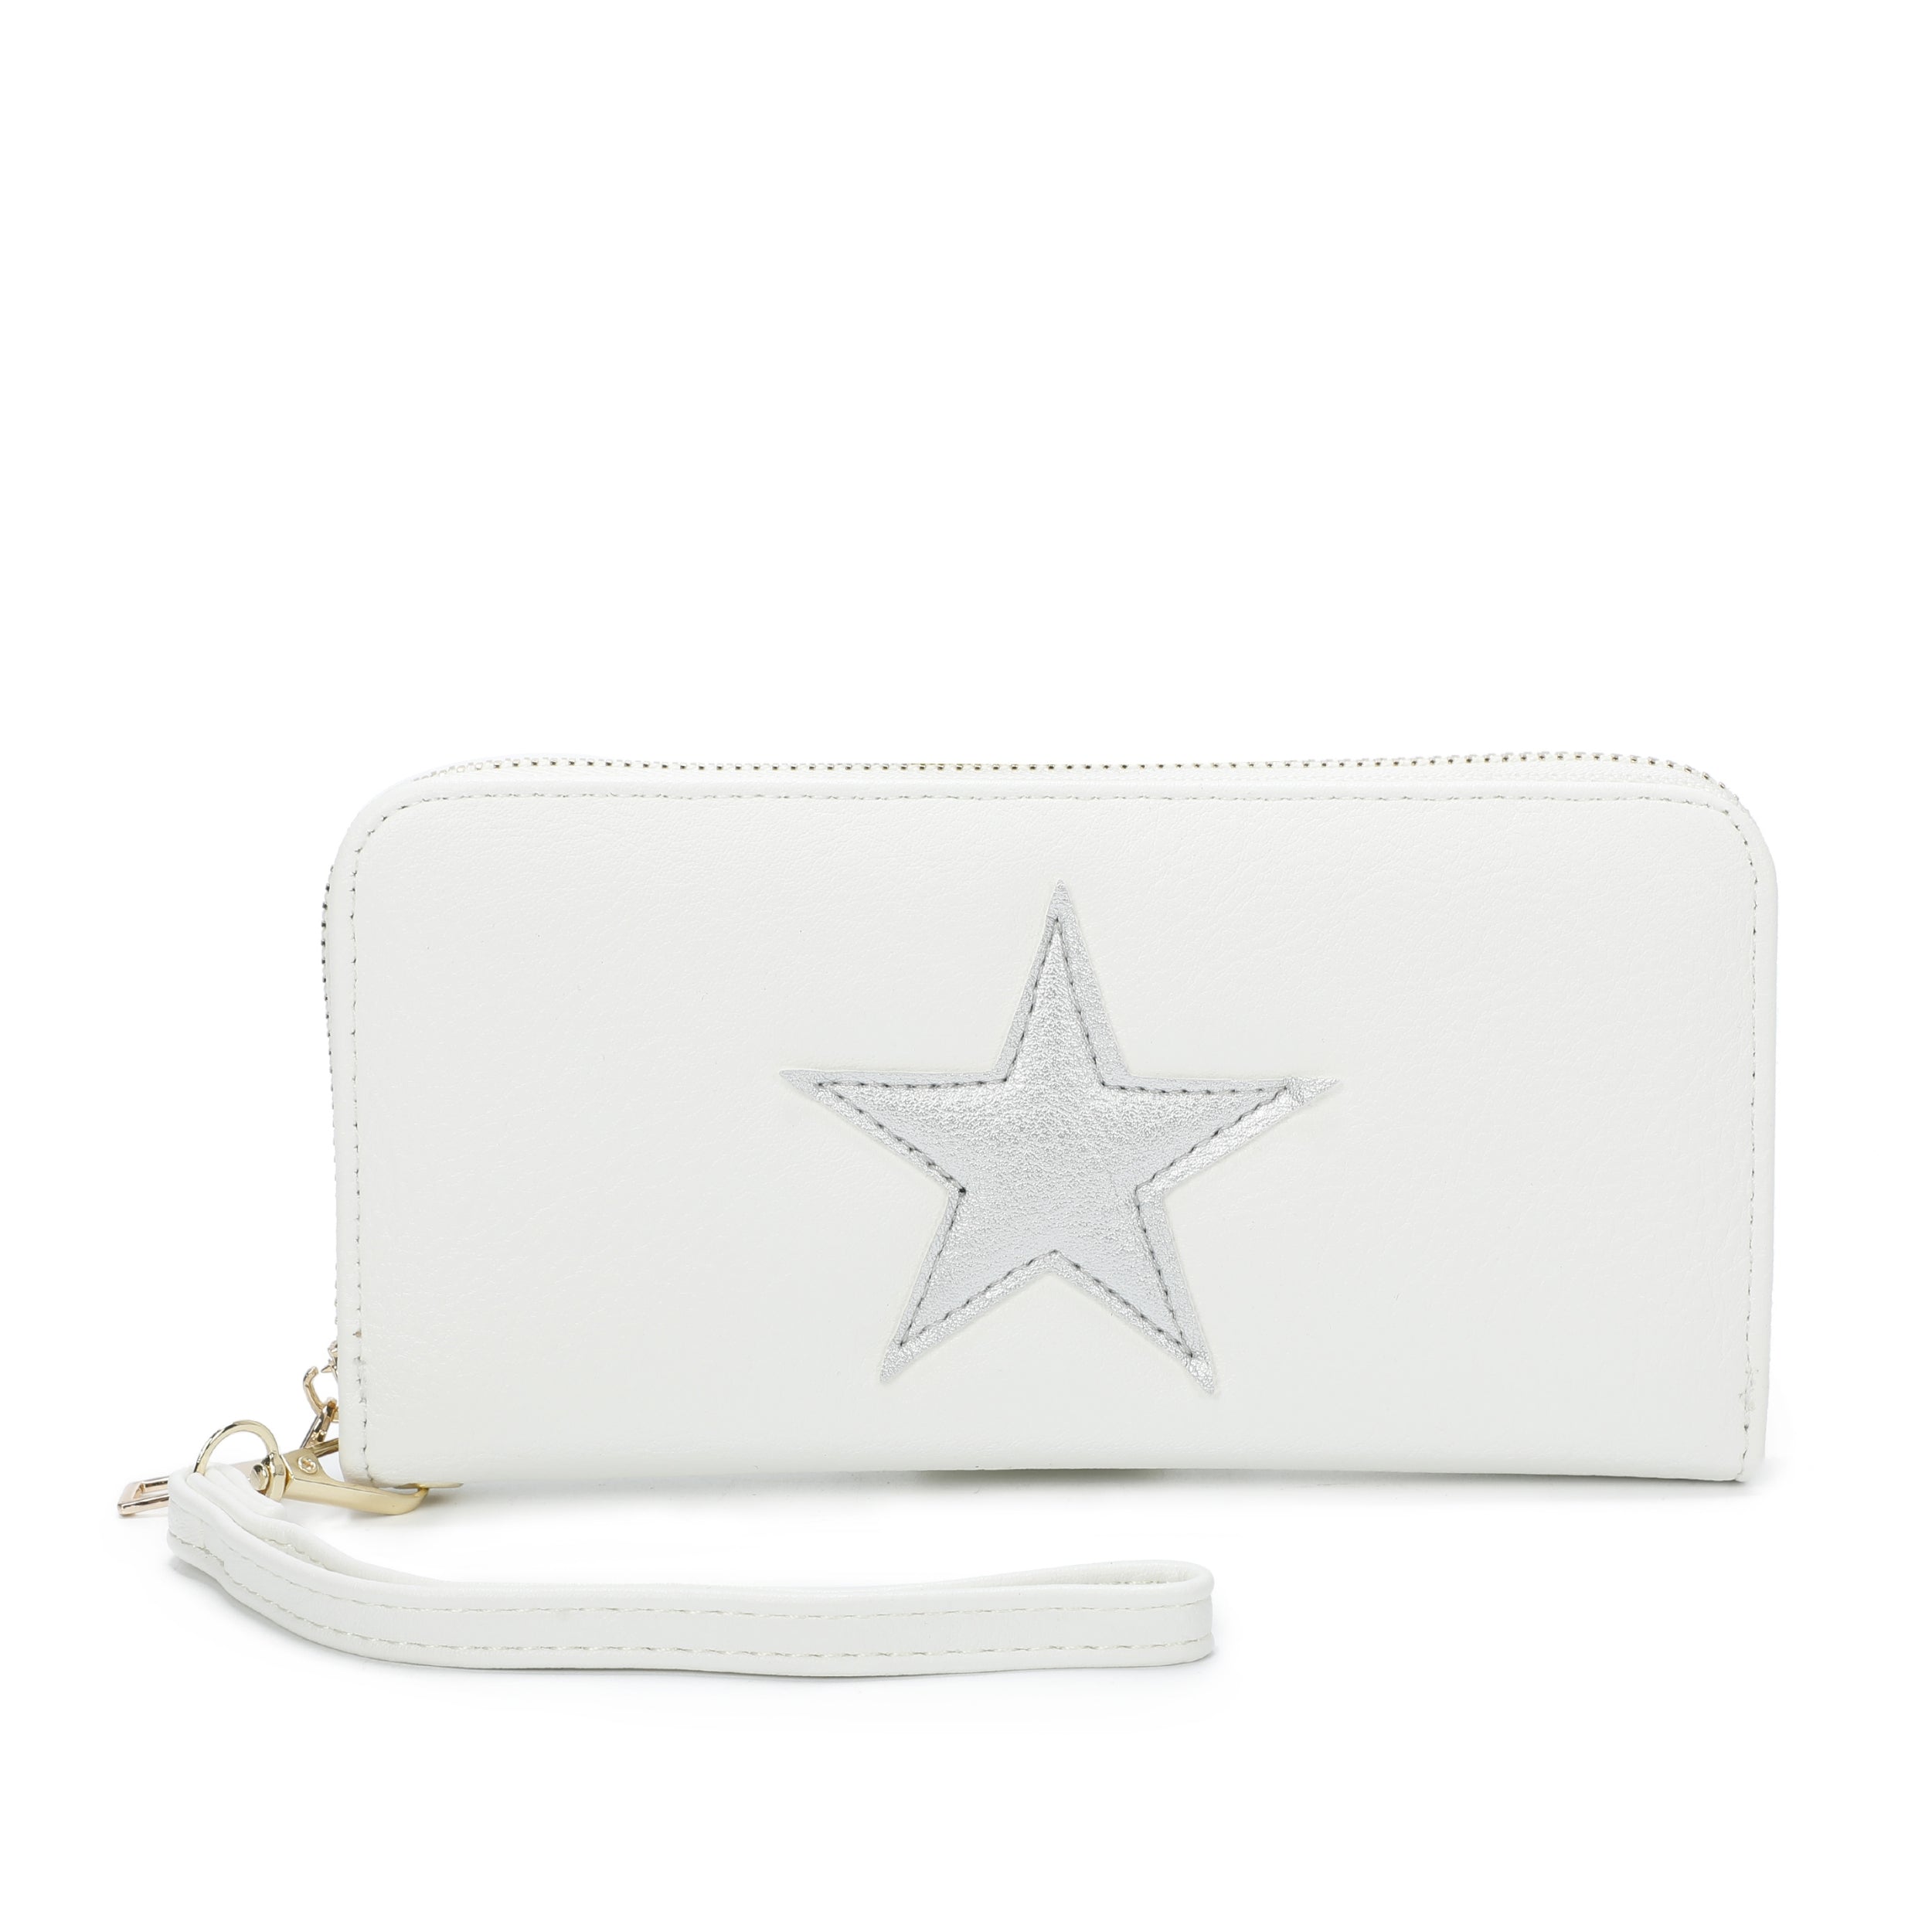 ABH Star purse